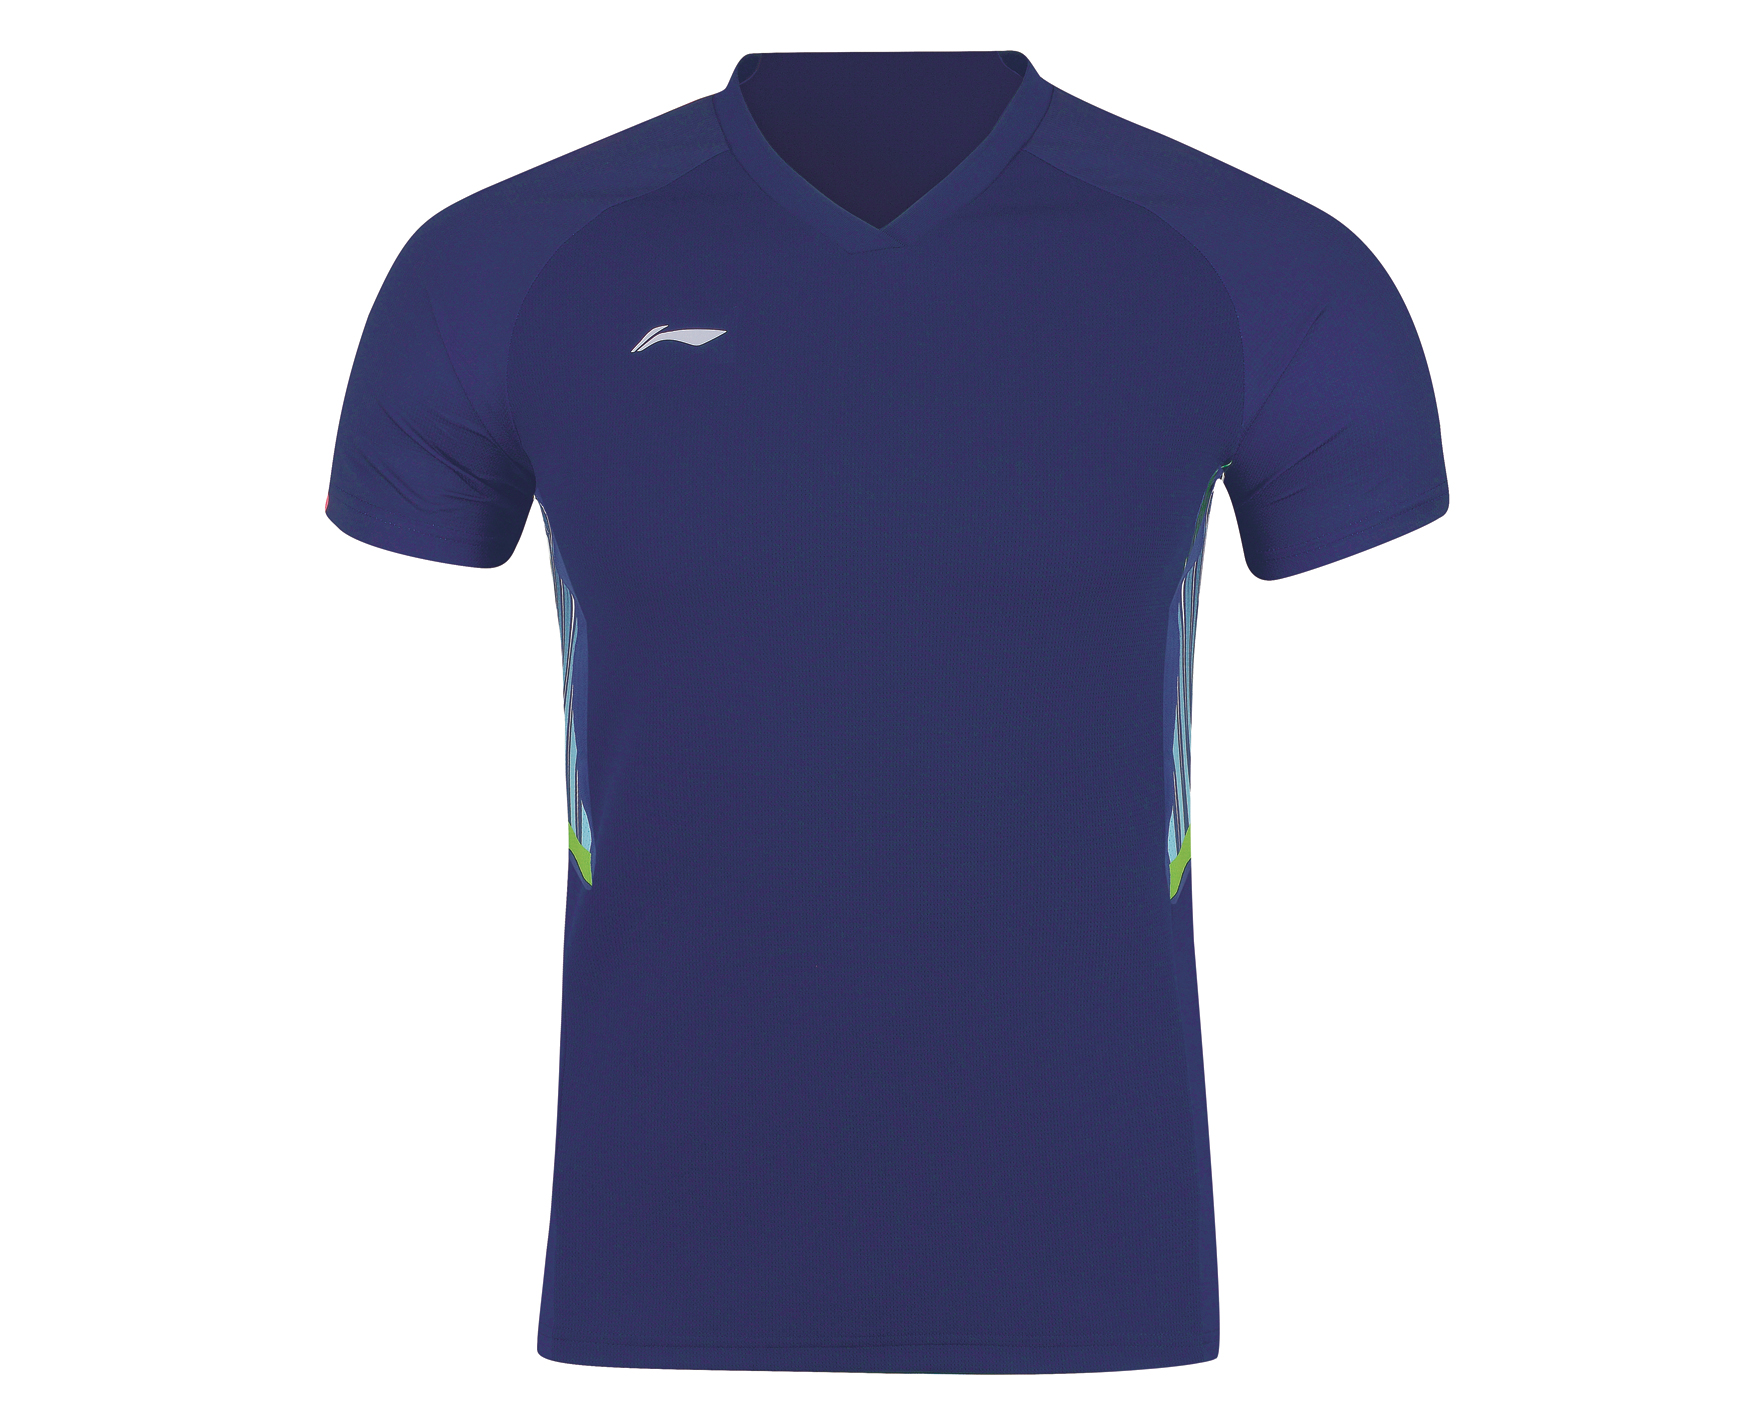 Details about   Li Ning men's sport Tops tennis/badminton clothes set T shirts+shorts 